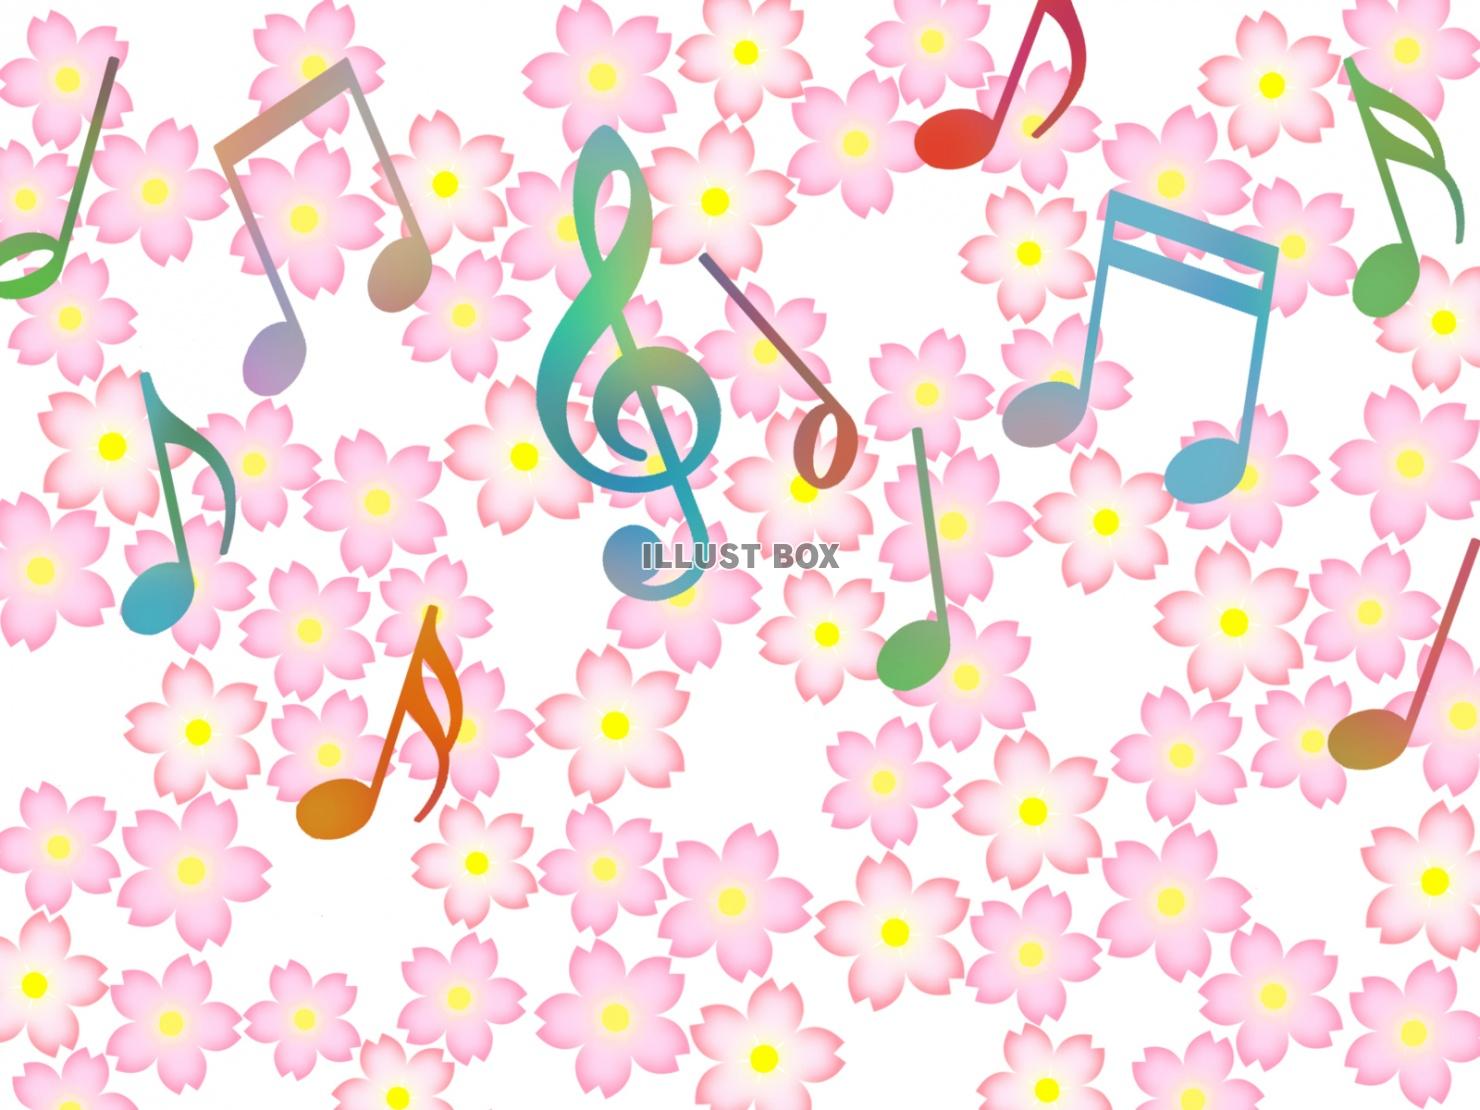 音符と桜の花模様の壁紙シンプル背景素材イラスト